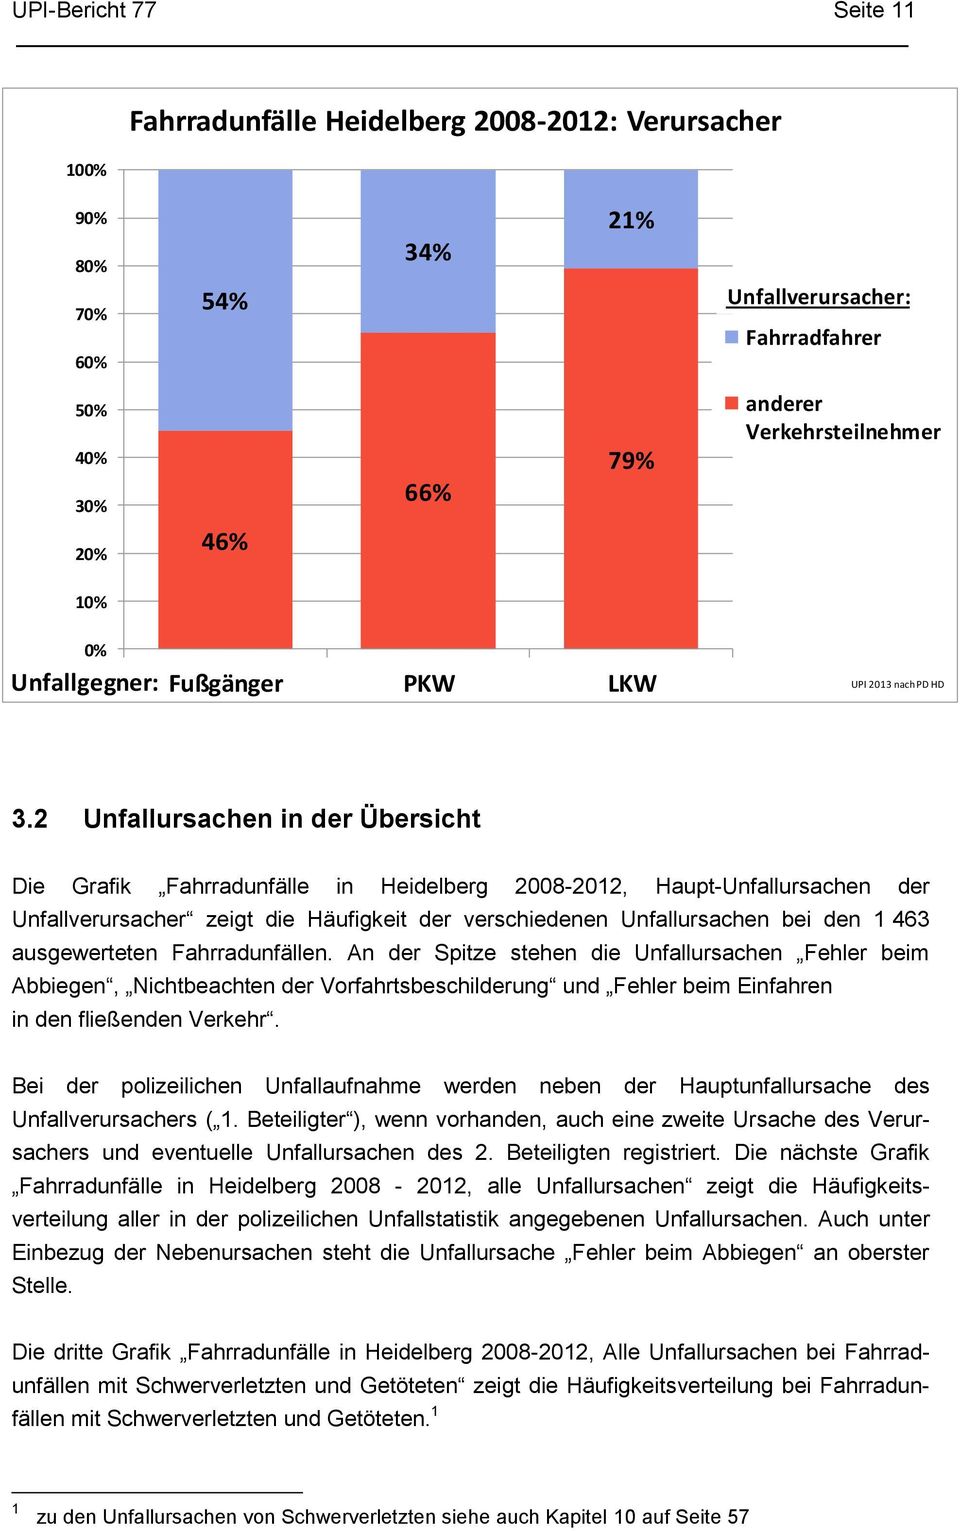 2 Unfallursachen in der Übersicht Die Grafik Fahrradunfälle in Heidelberg 2008-2012, Haupt-Unfallursachen der Unfallverursacher zeigt die Häufigkeit der verschiedenen Unfallursachen bei den 1 463